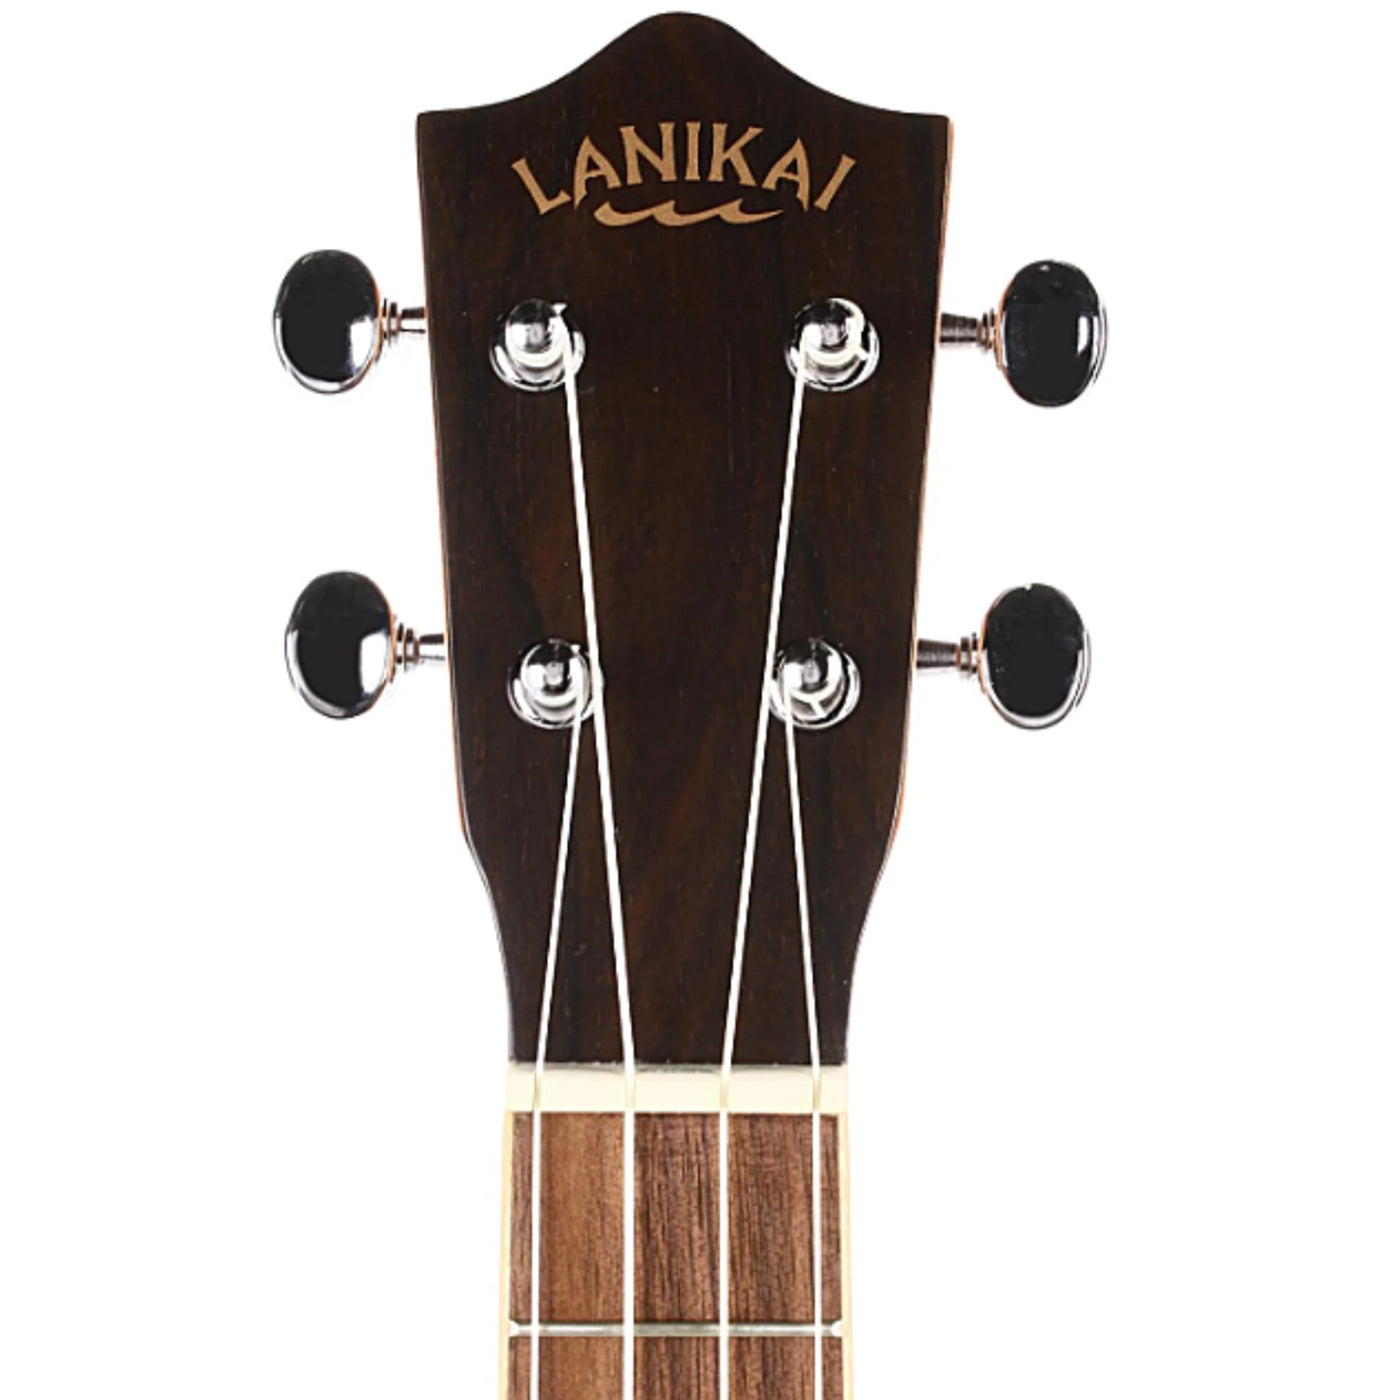 Lanikai ZR-T 4 String Ukulele, Tenor Ziricote Ukulele, with Rosewood Fingerboard